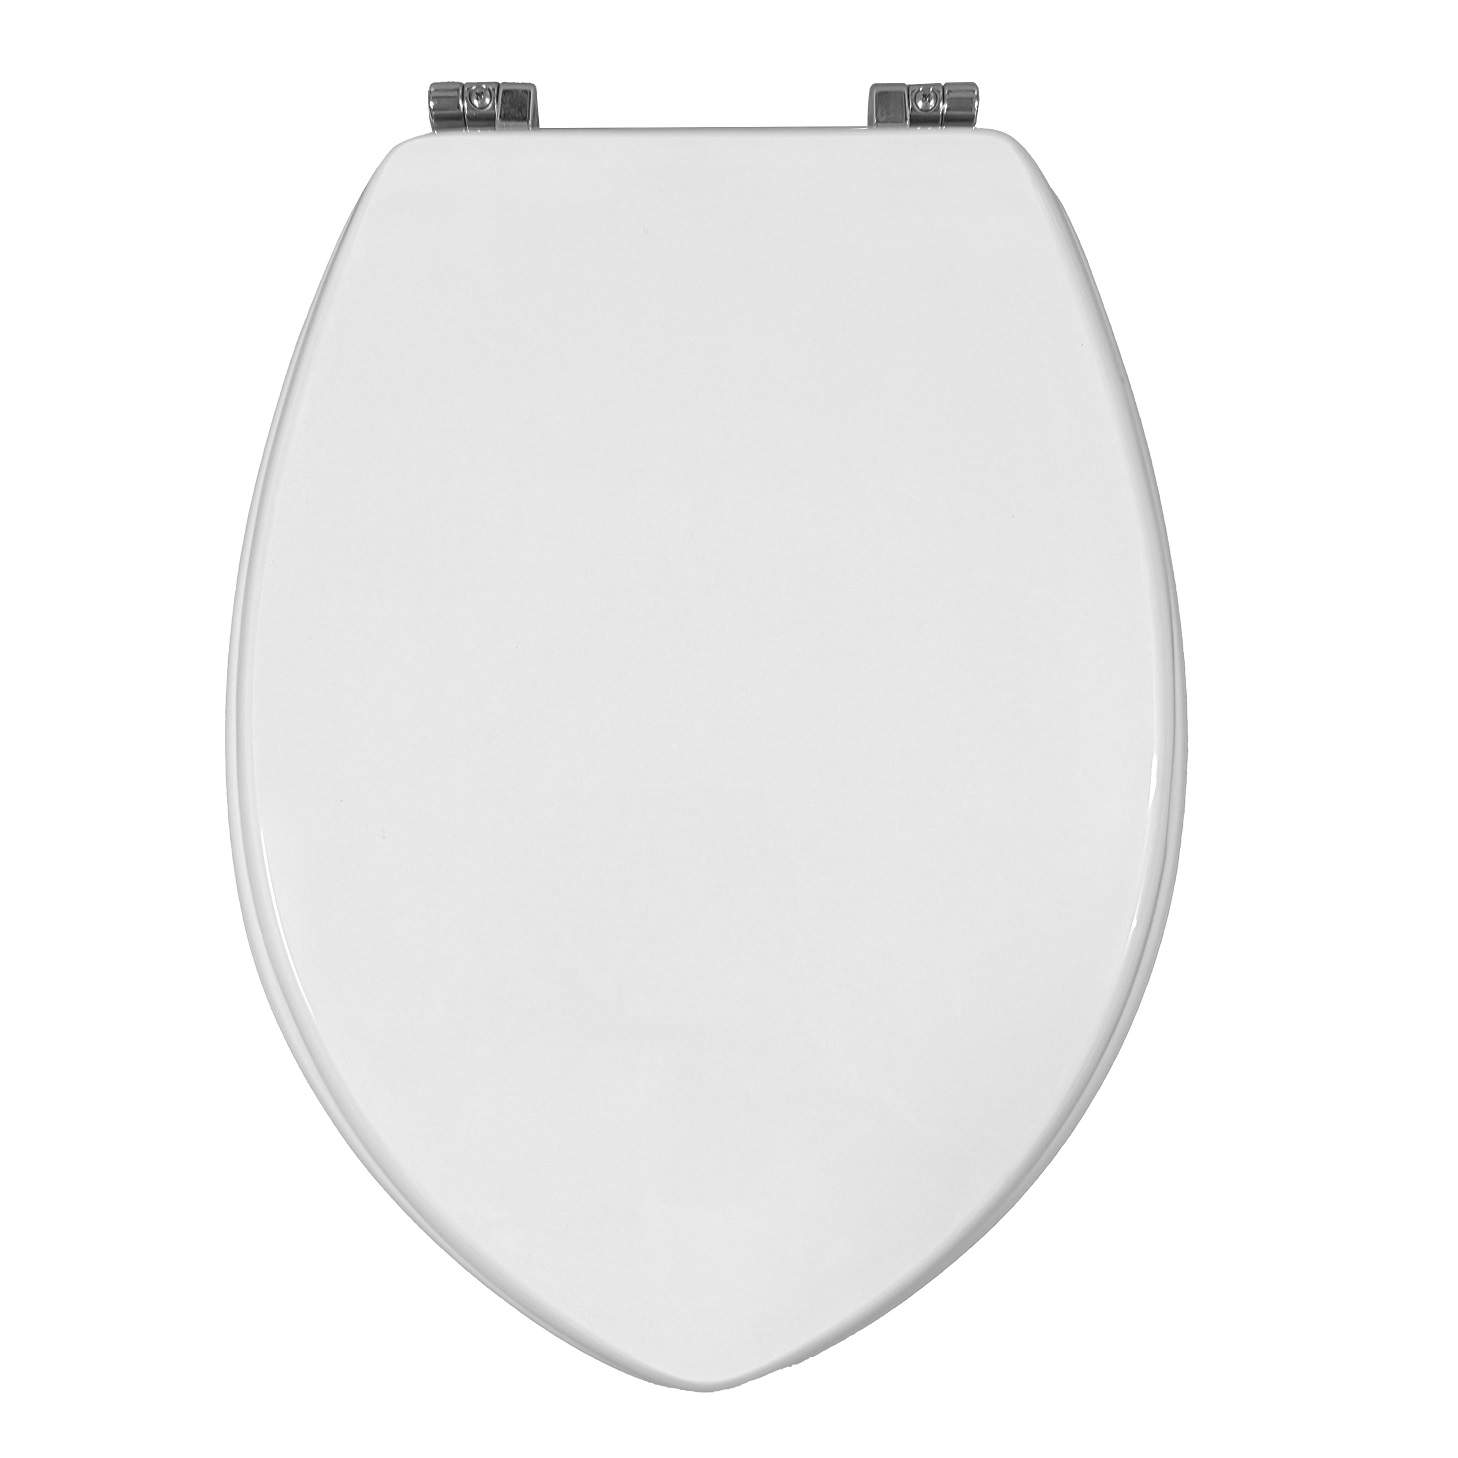 IDEAL STANDARD Ponti Z toilet seat, white